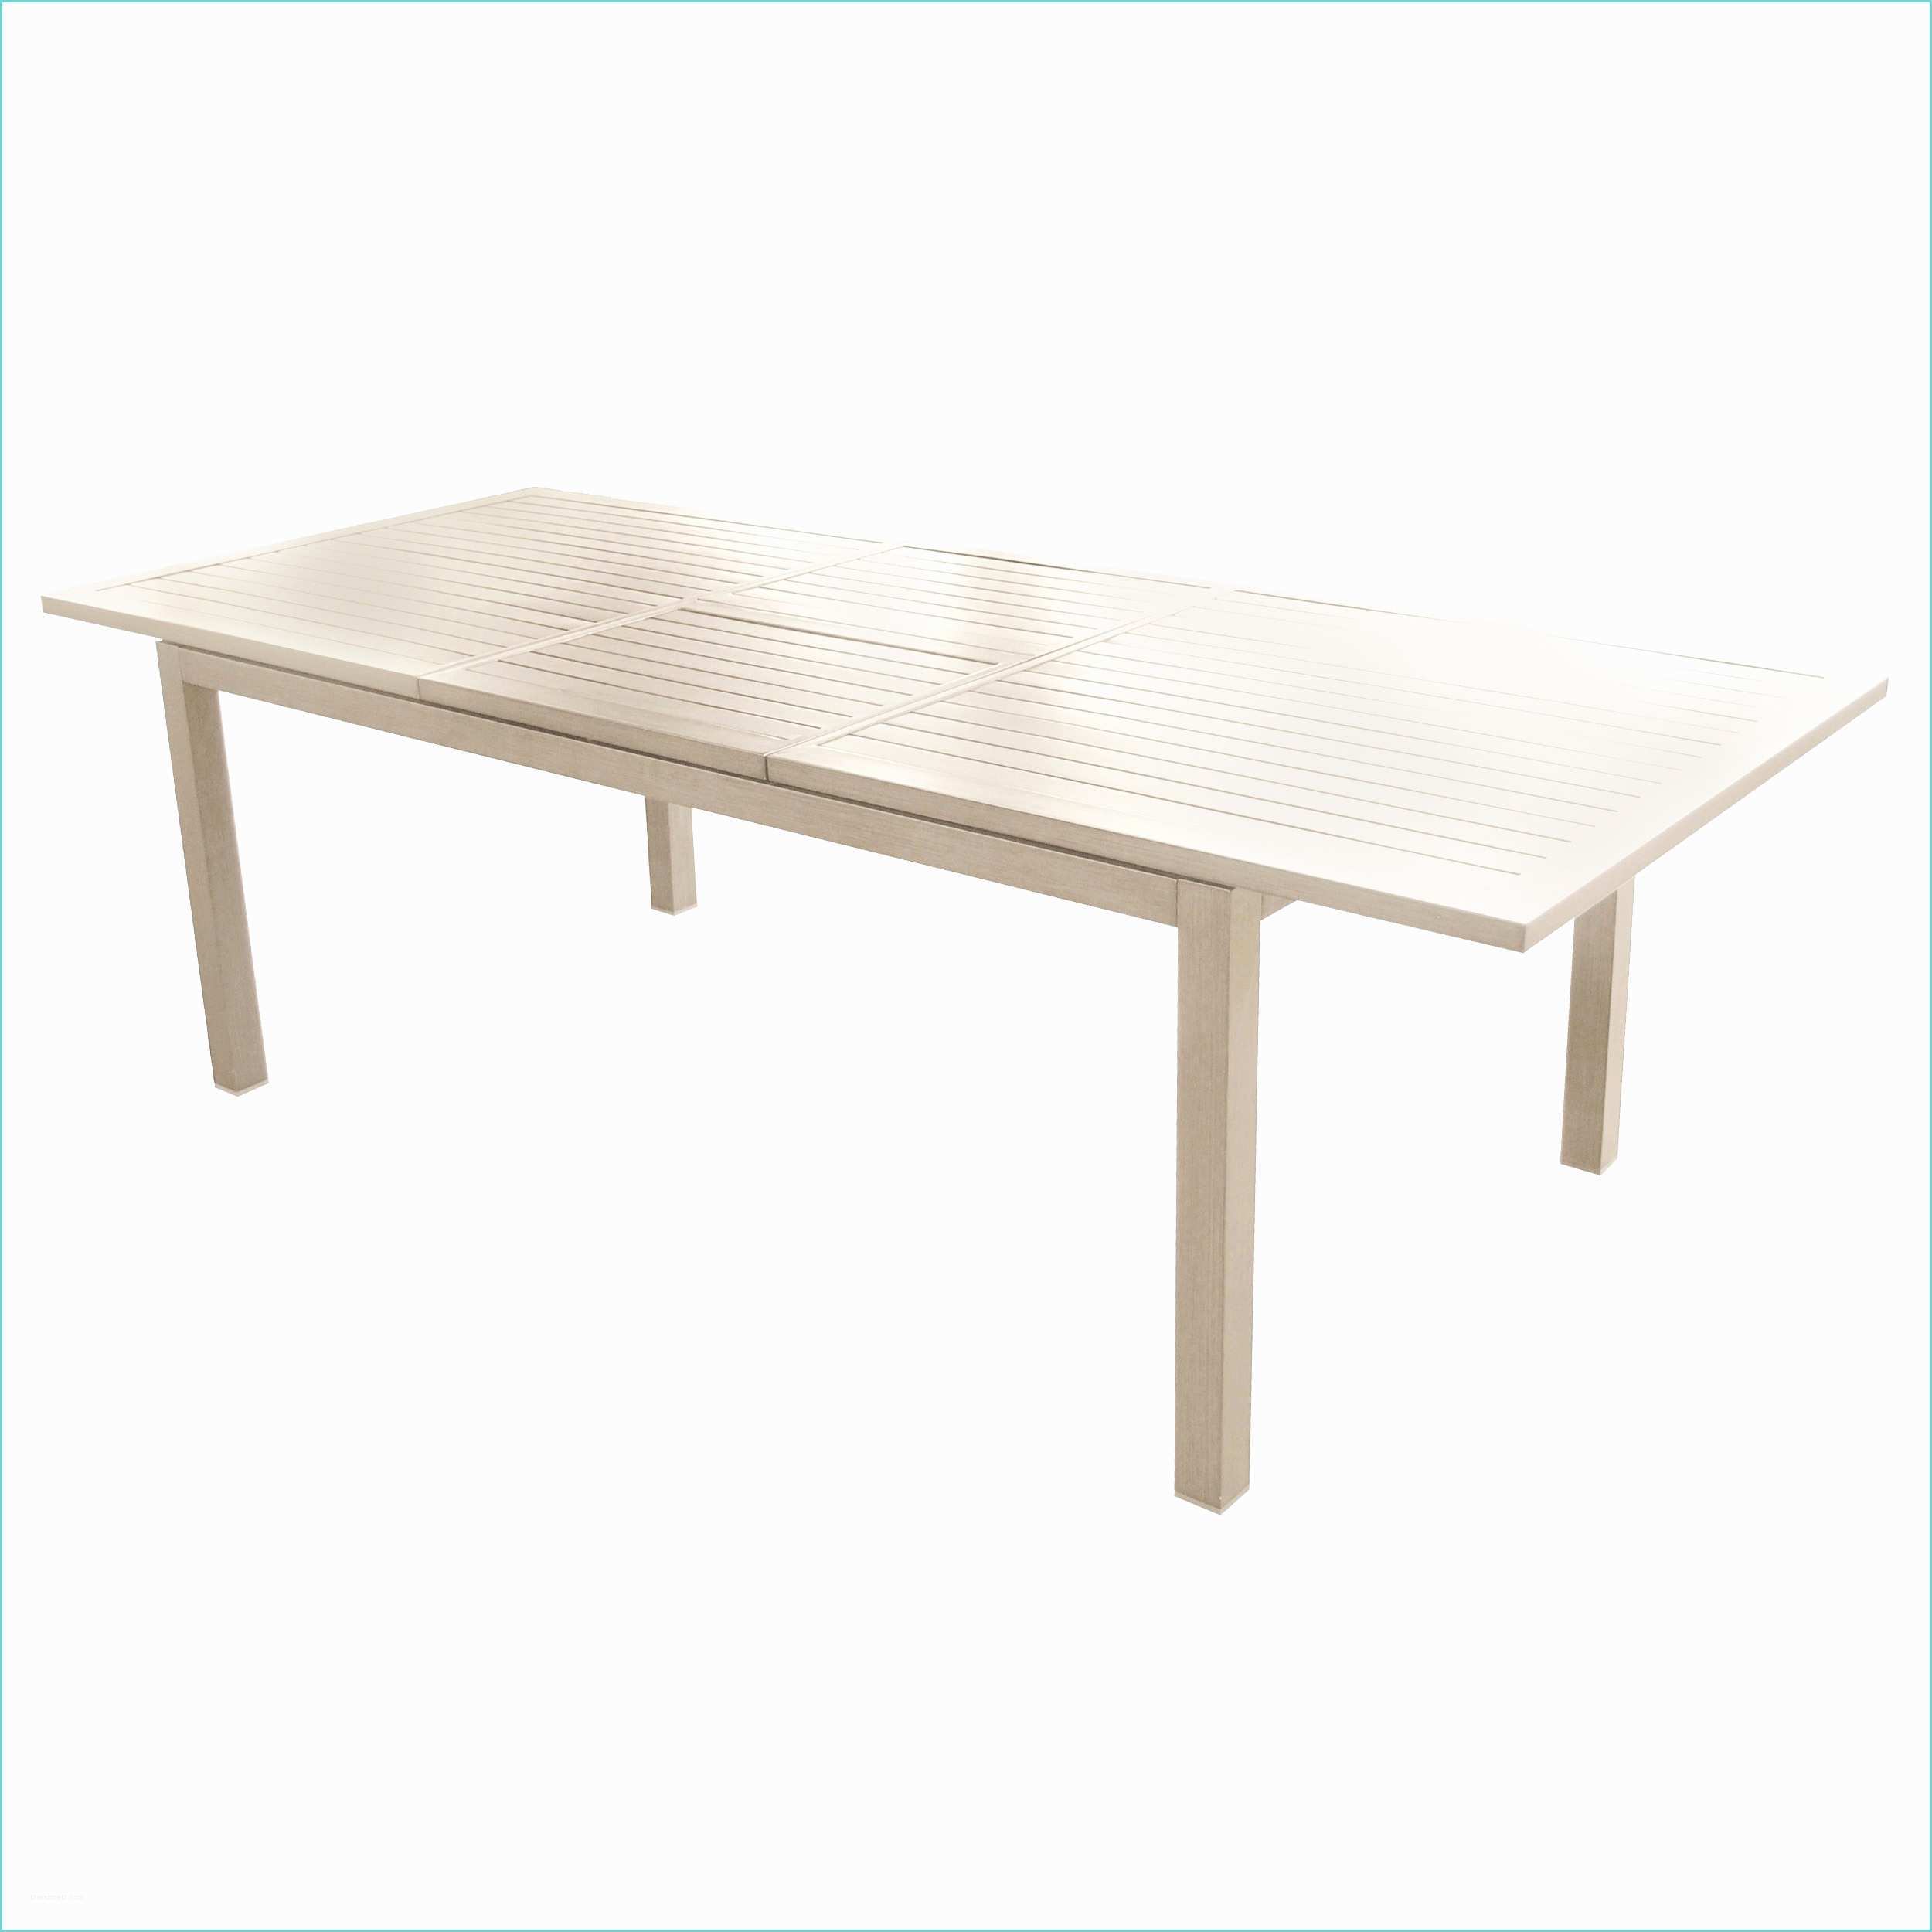 Table Basse De Jardin Ikea Table De Jardin Extensible Ikea Cool Table De Salon